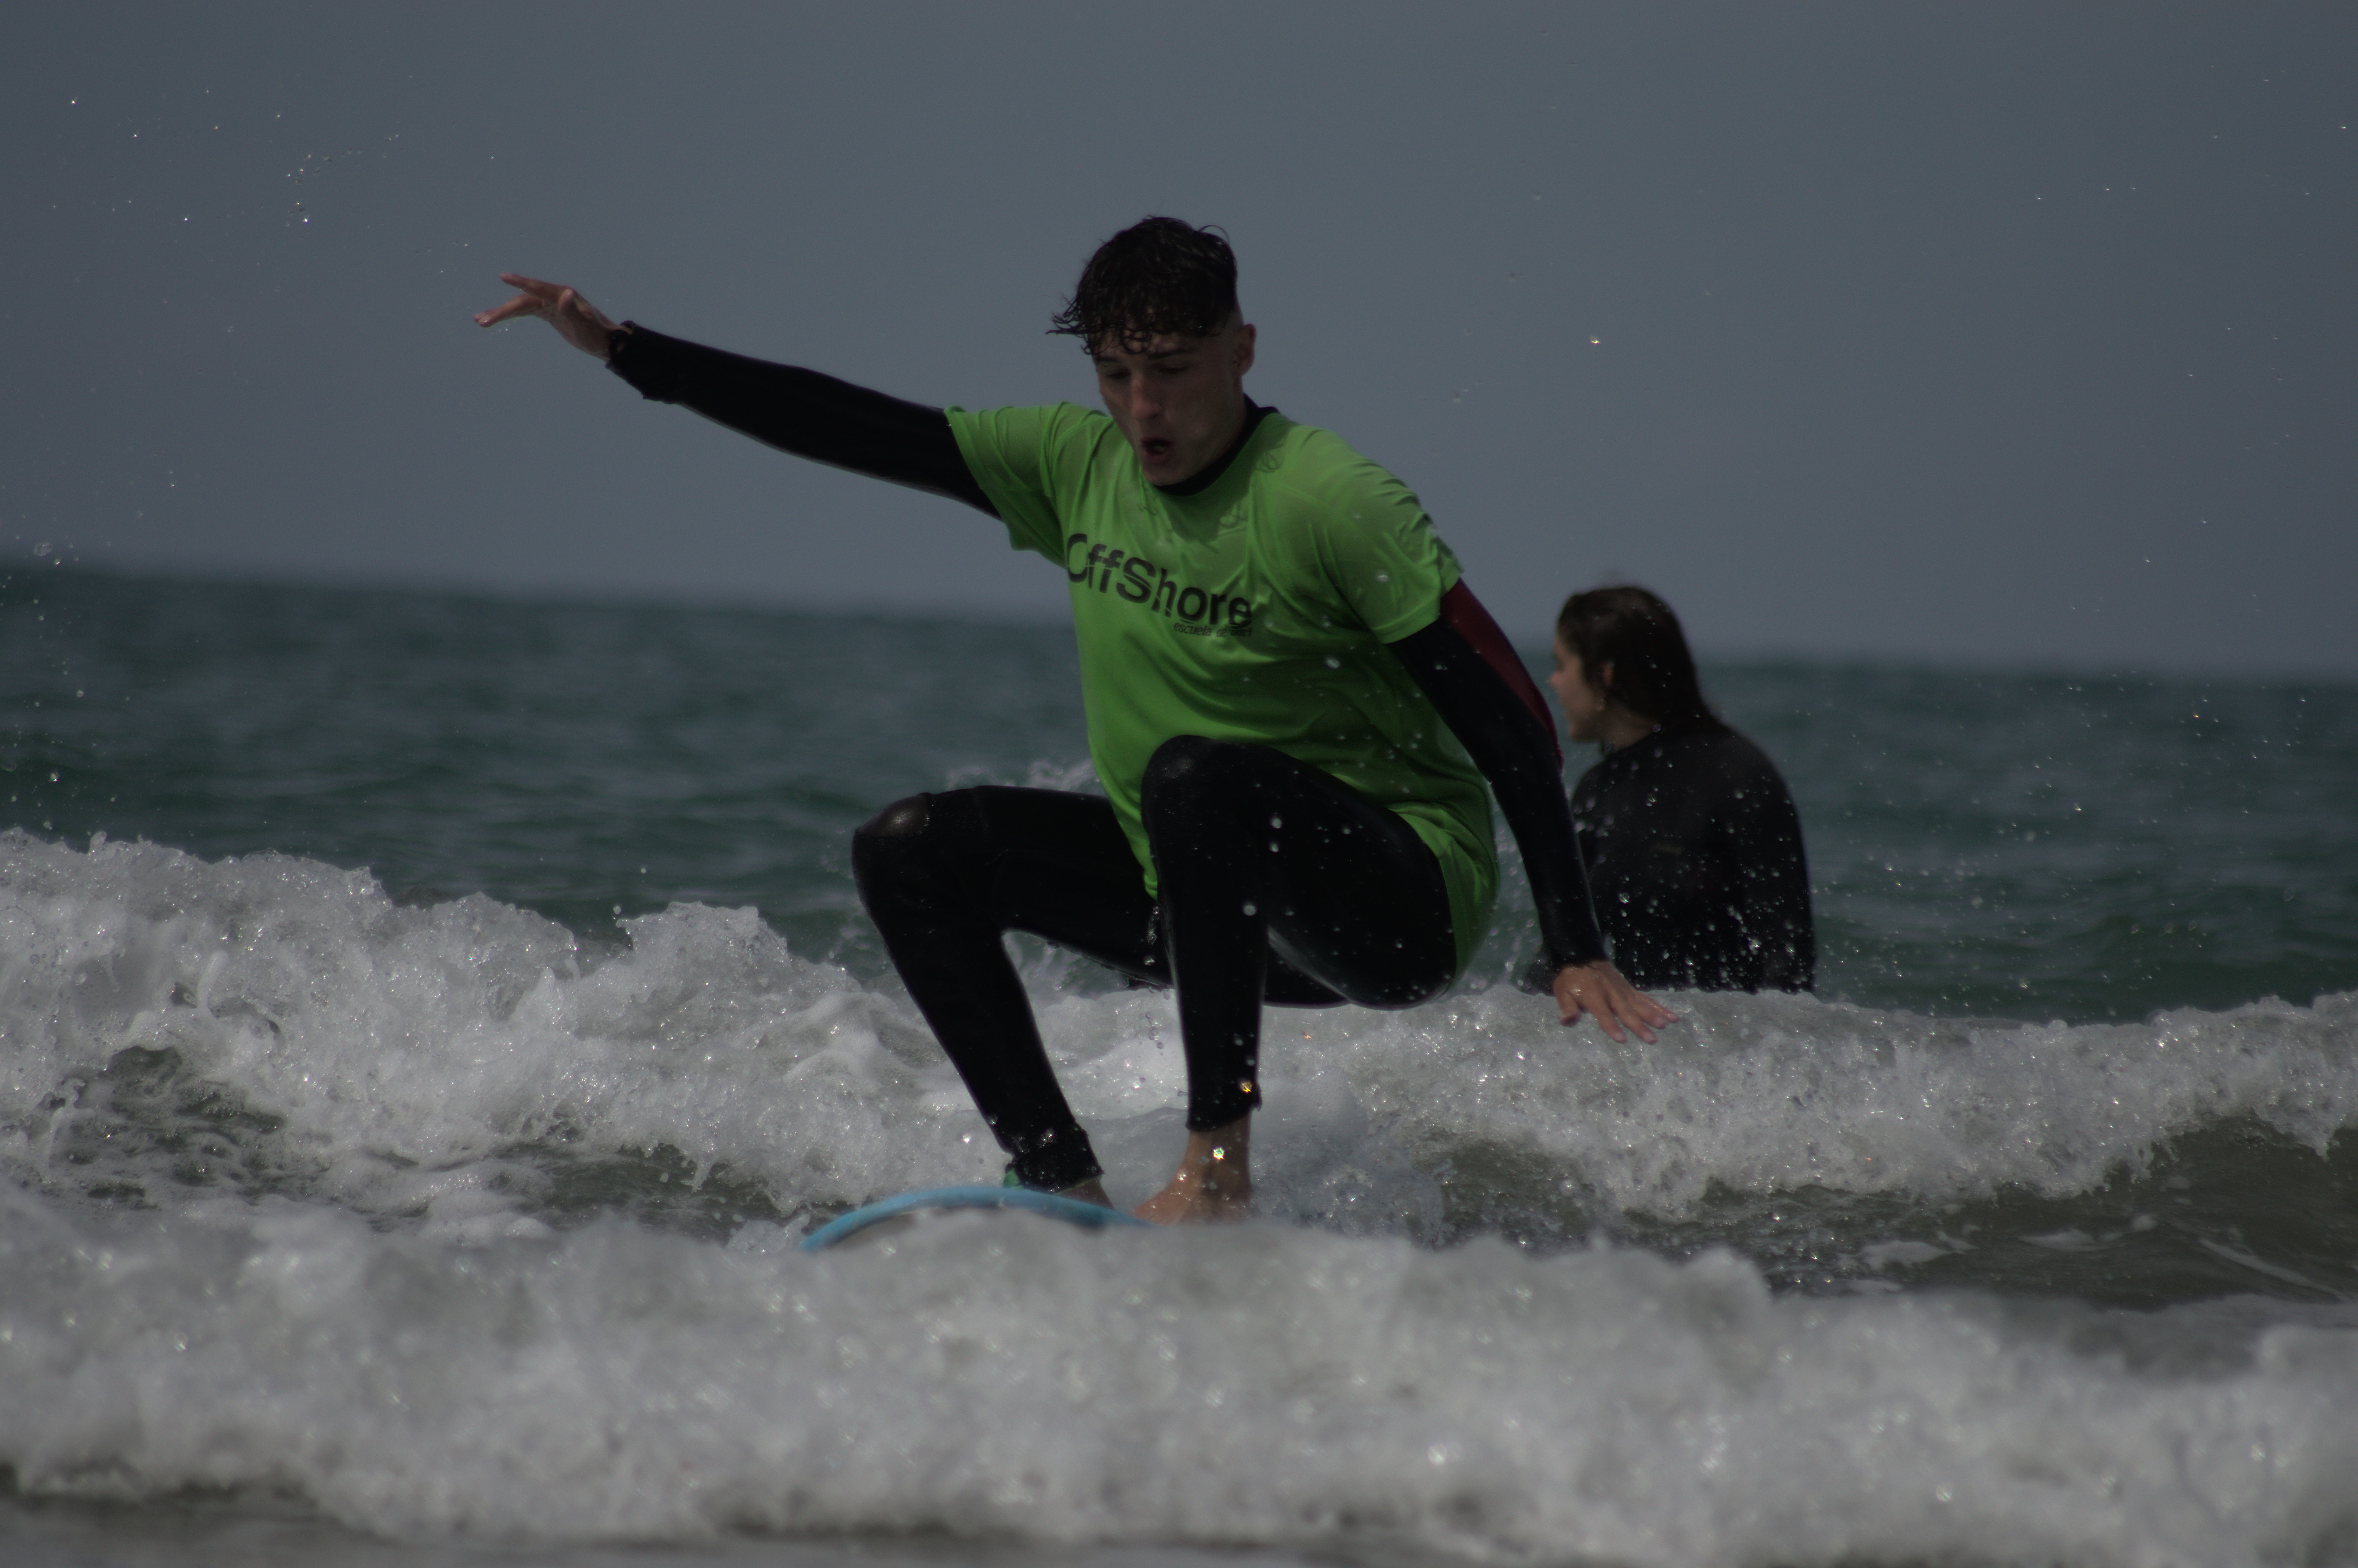 El alumnado de Amor de Dios Cádiz aprende a hacer surf